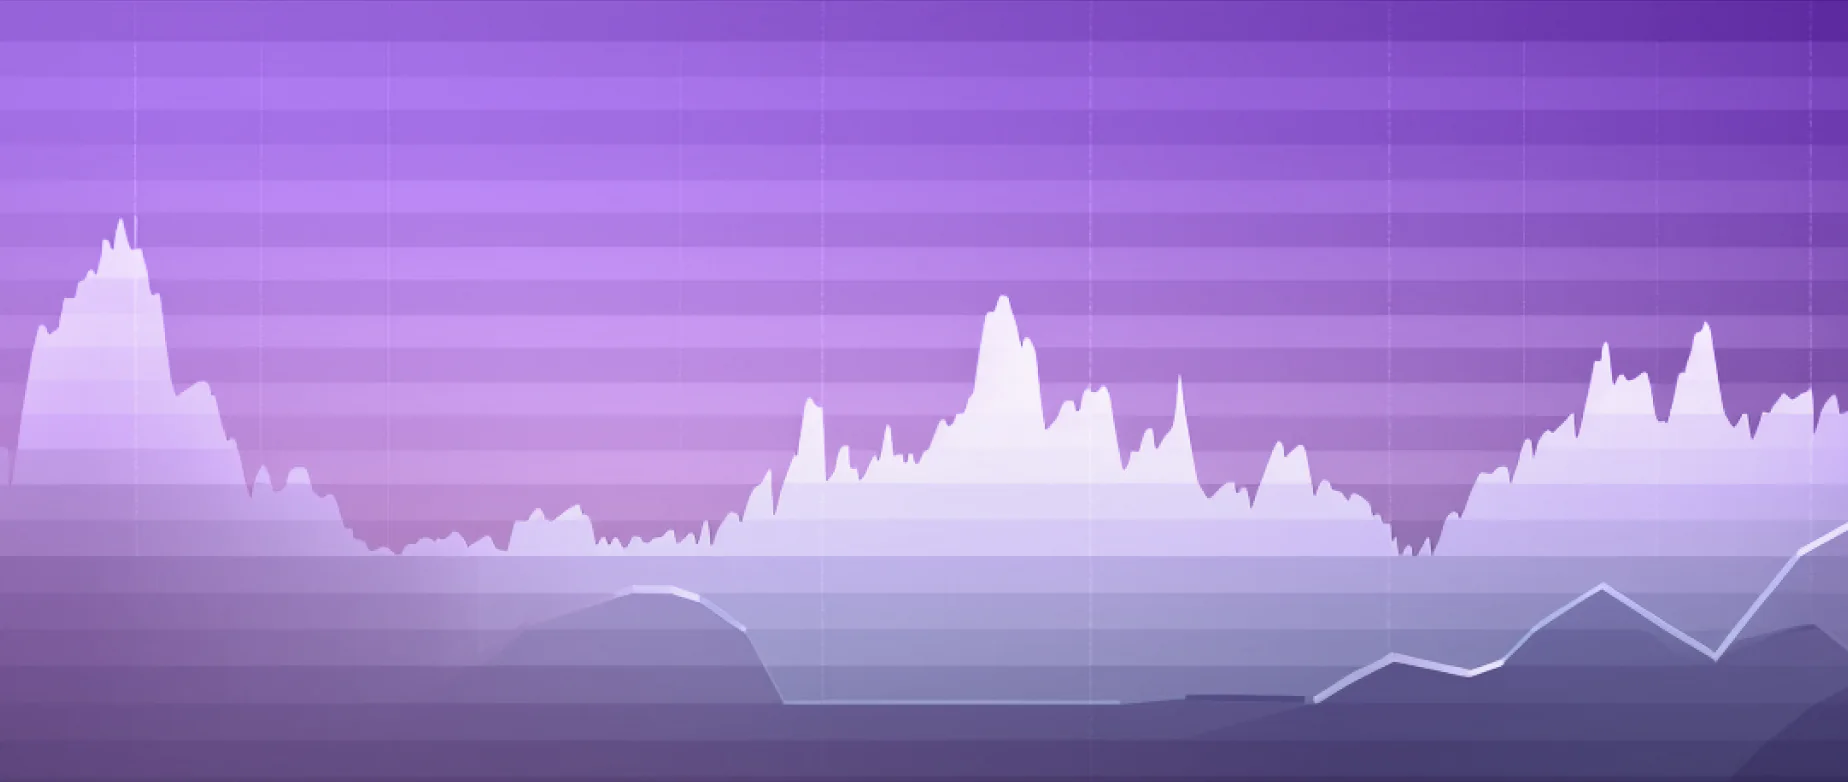 紫色背景上的图表波峰波谷